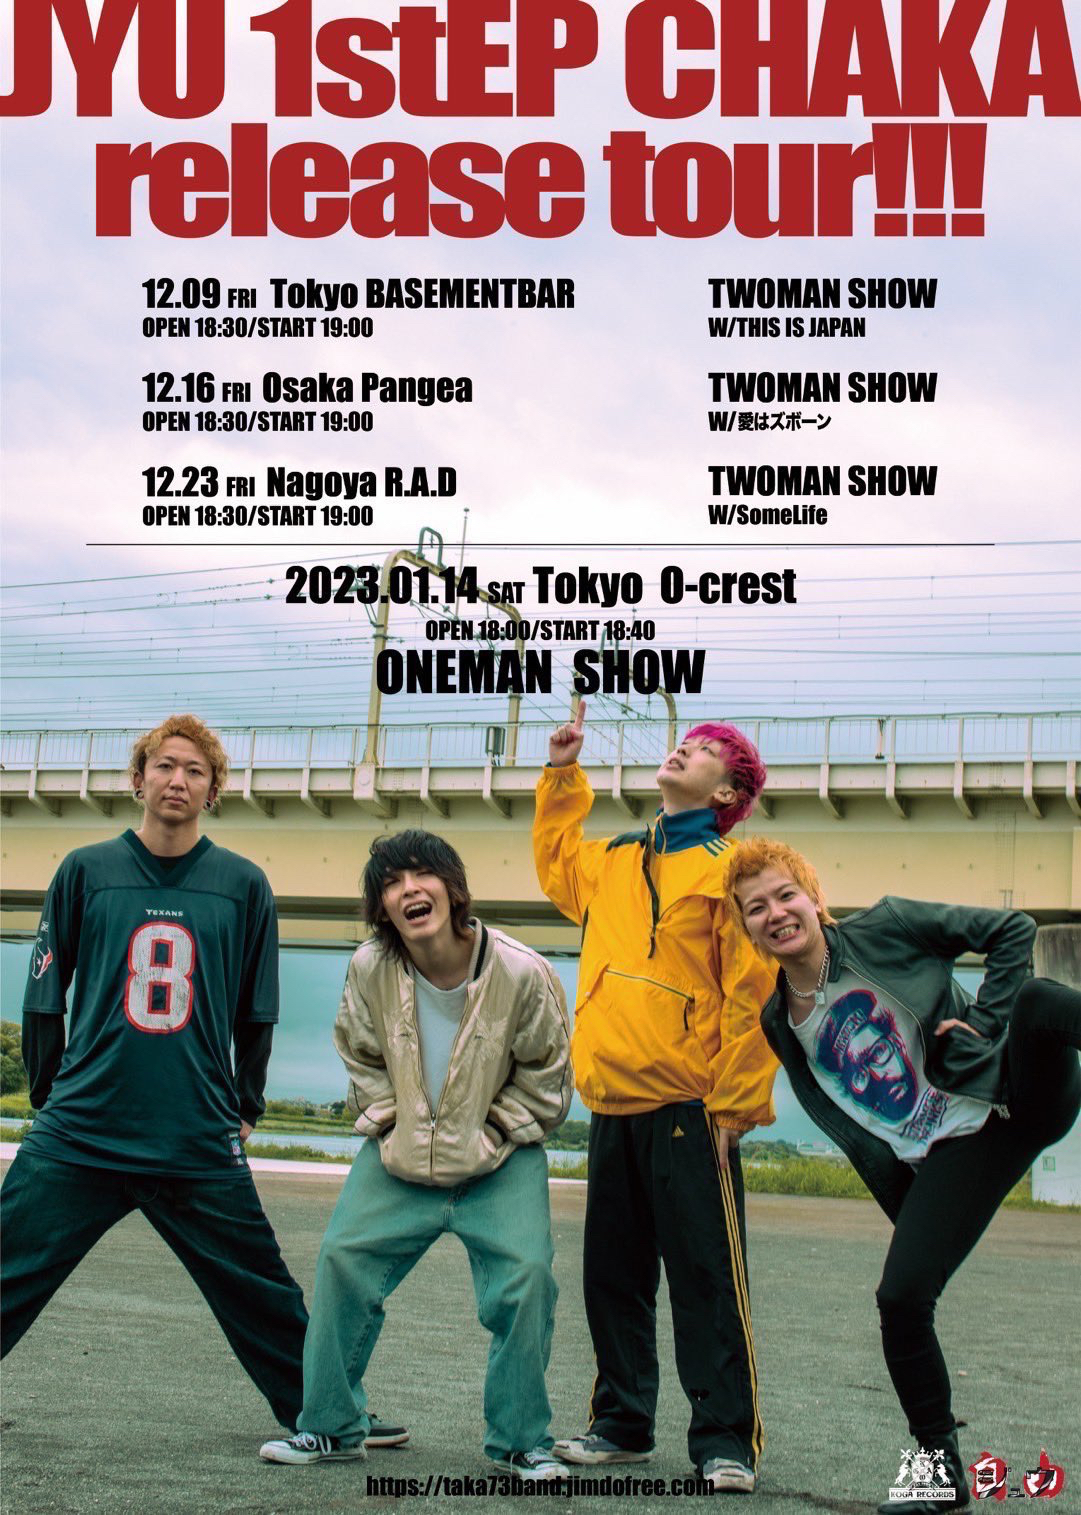 『ジュウ1st EP "CHAKA" Release Tour』名古屋編